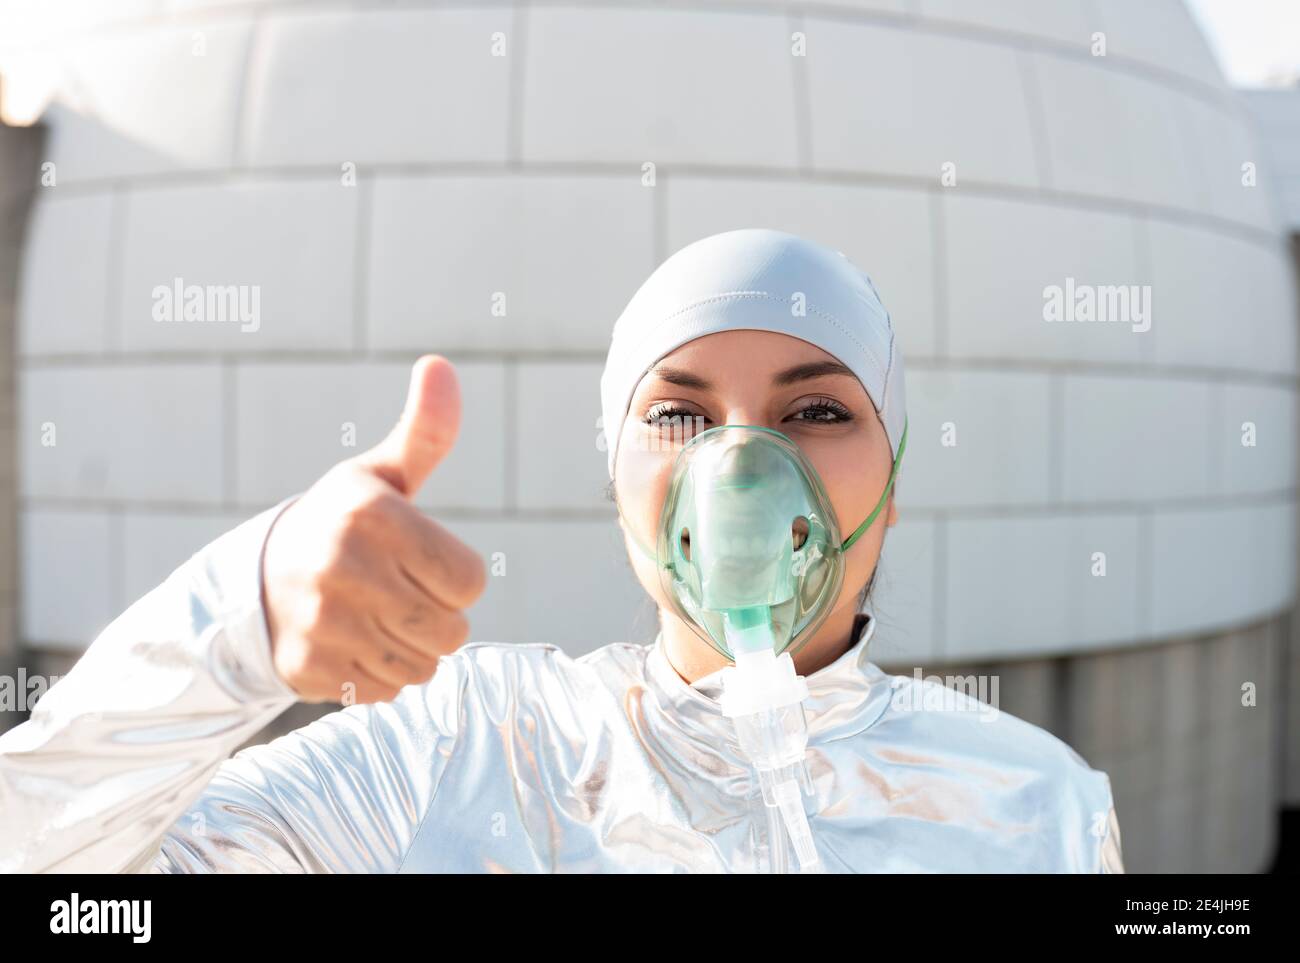 Junge Frau in Schutzanzug mit Sauerstoff-Gesichtsmaske und futuristischer Sonnenbrille mit Stop-Geste, während sie gegen Iglu steht Stockfoto